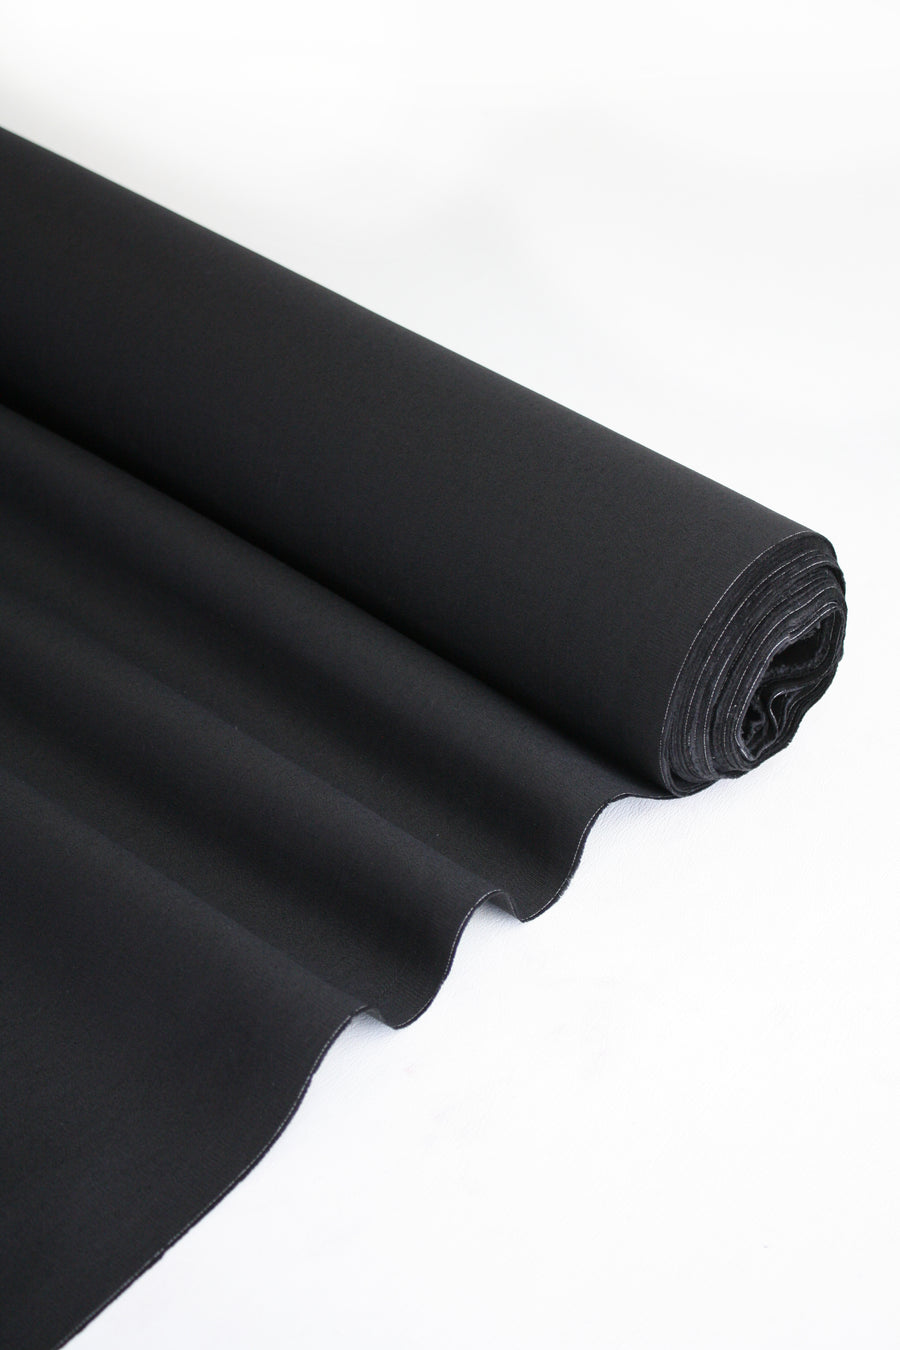 Emporium - Stretch Linen | Noir